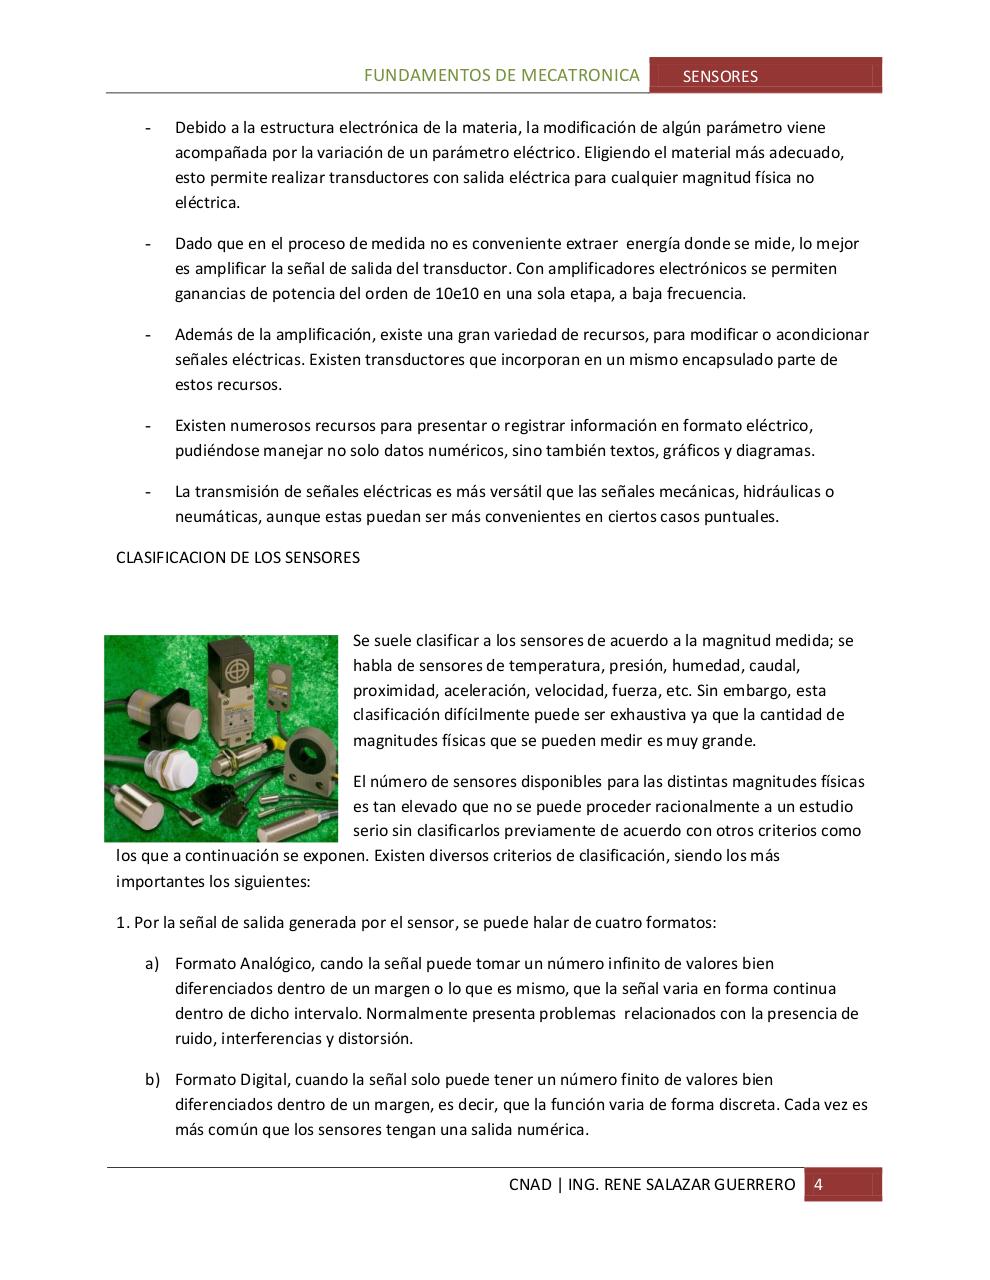 Vista previa del archivo PDF sensoresparte1.pdf